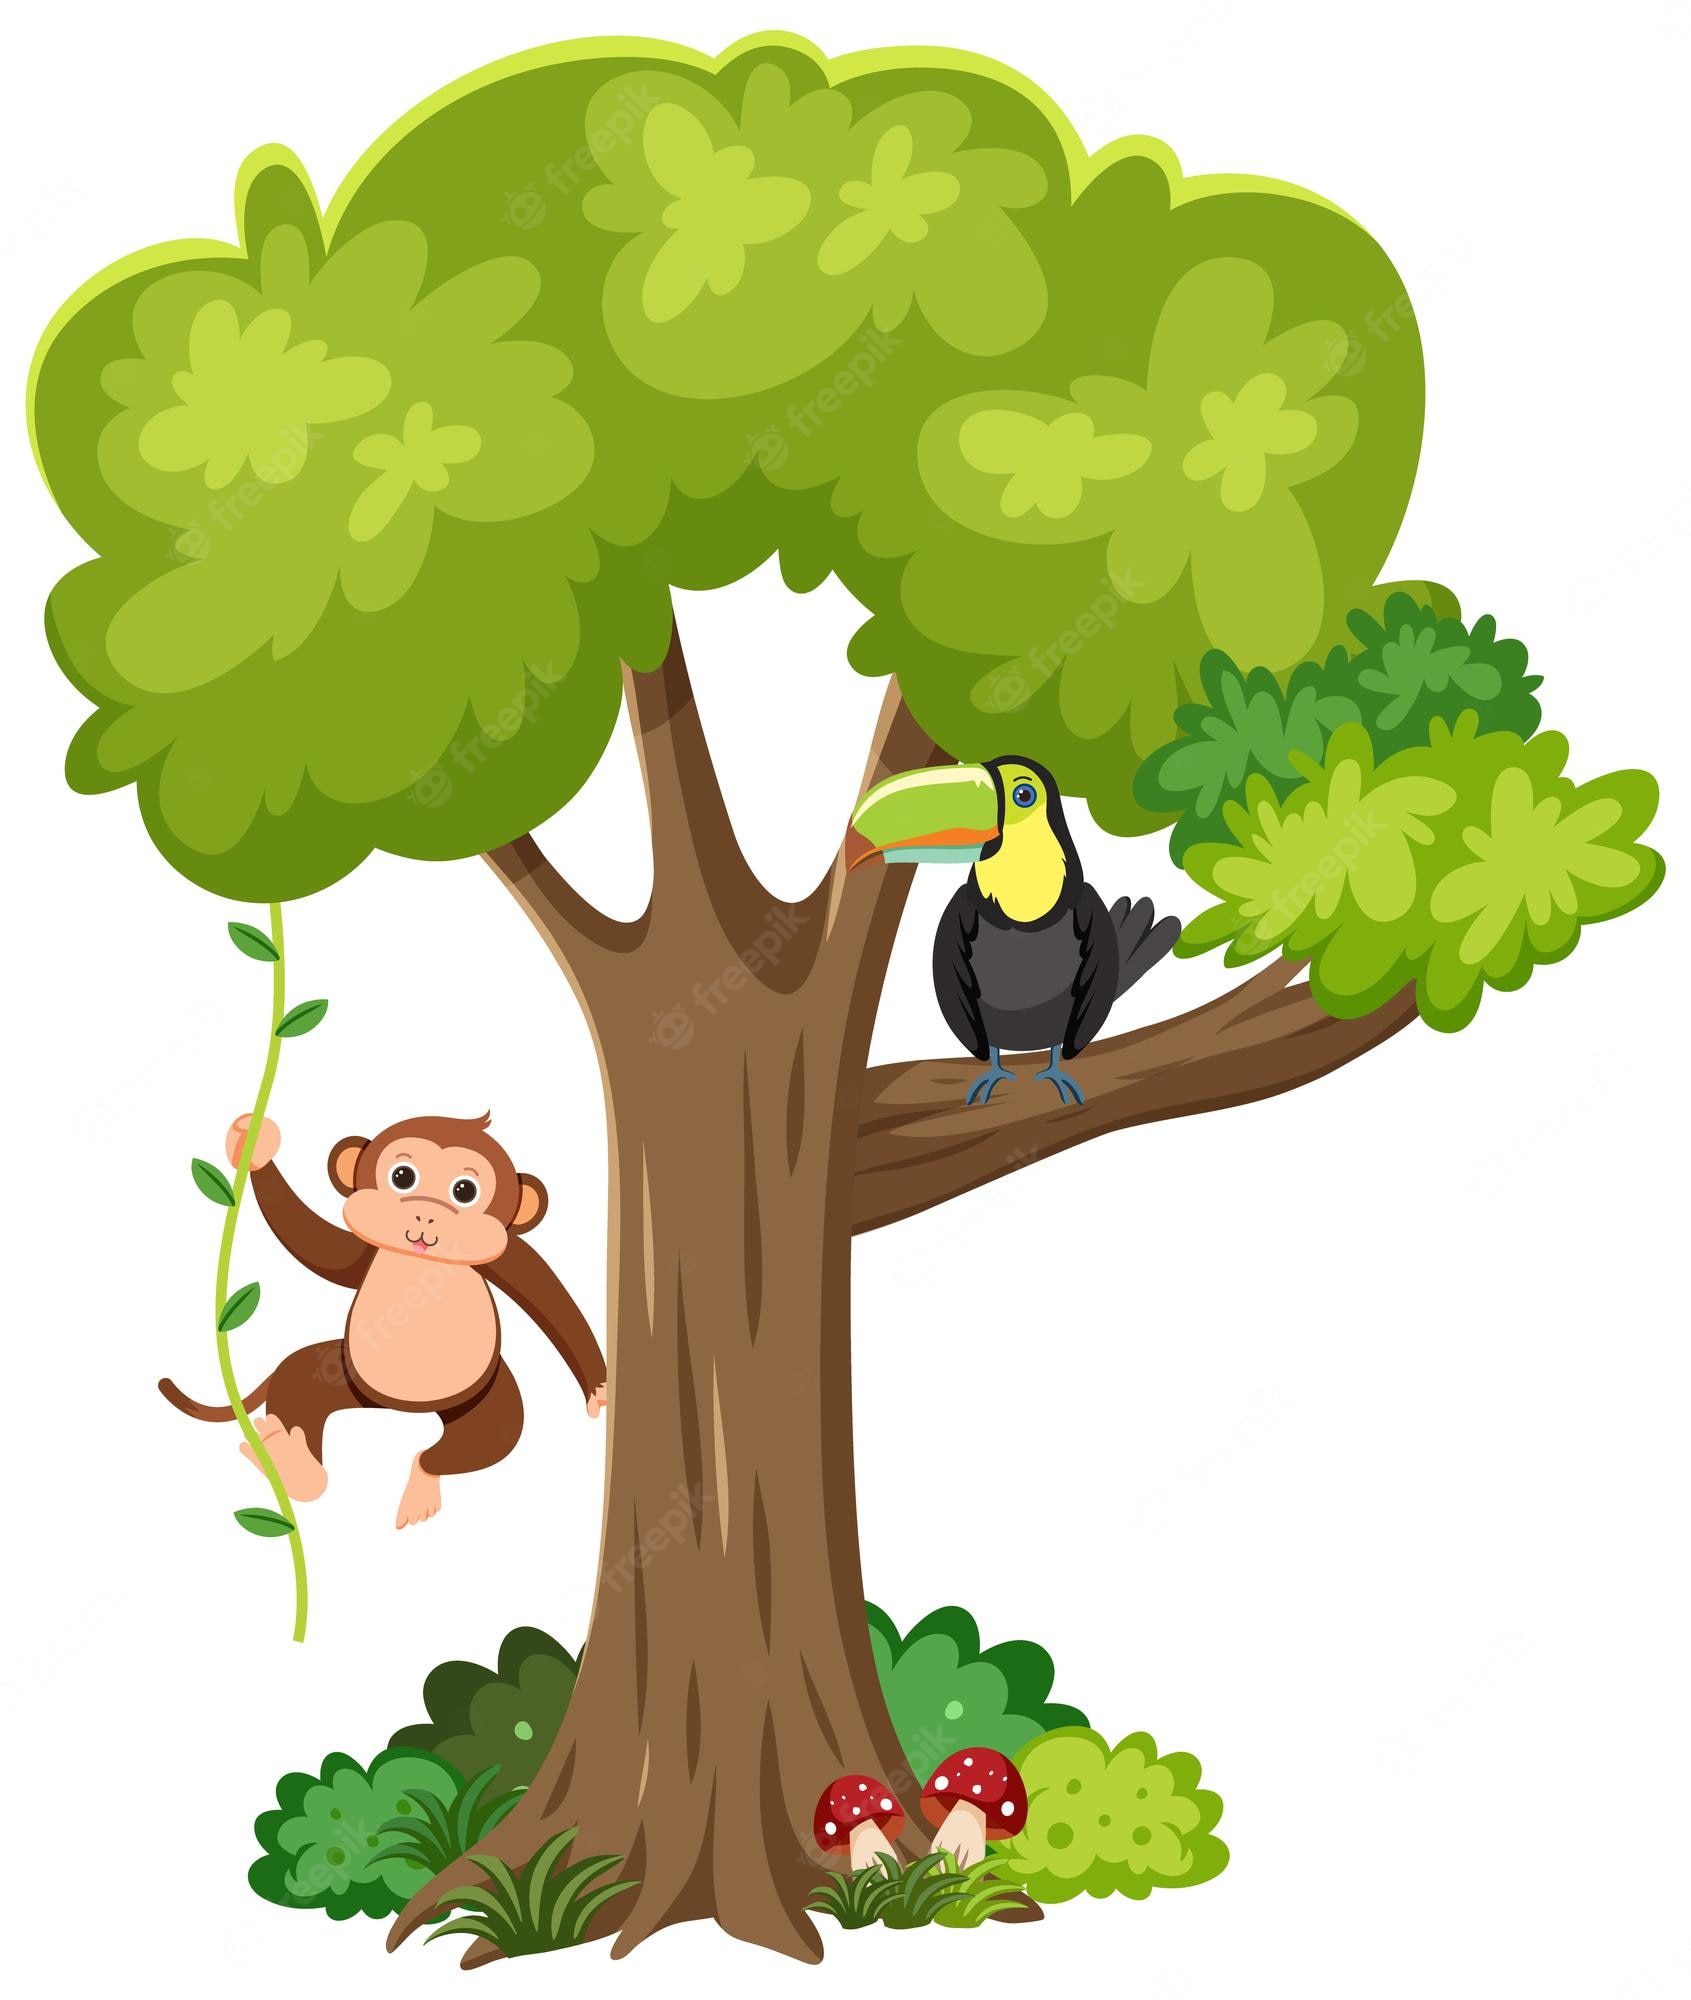 Watercolor. Monkeys clipart, cute tropical monkeys, For inst - Clip Art ...